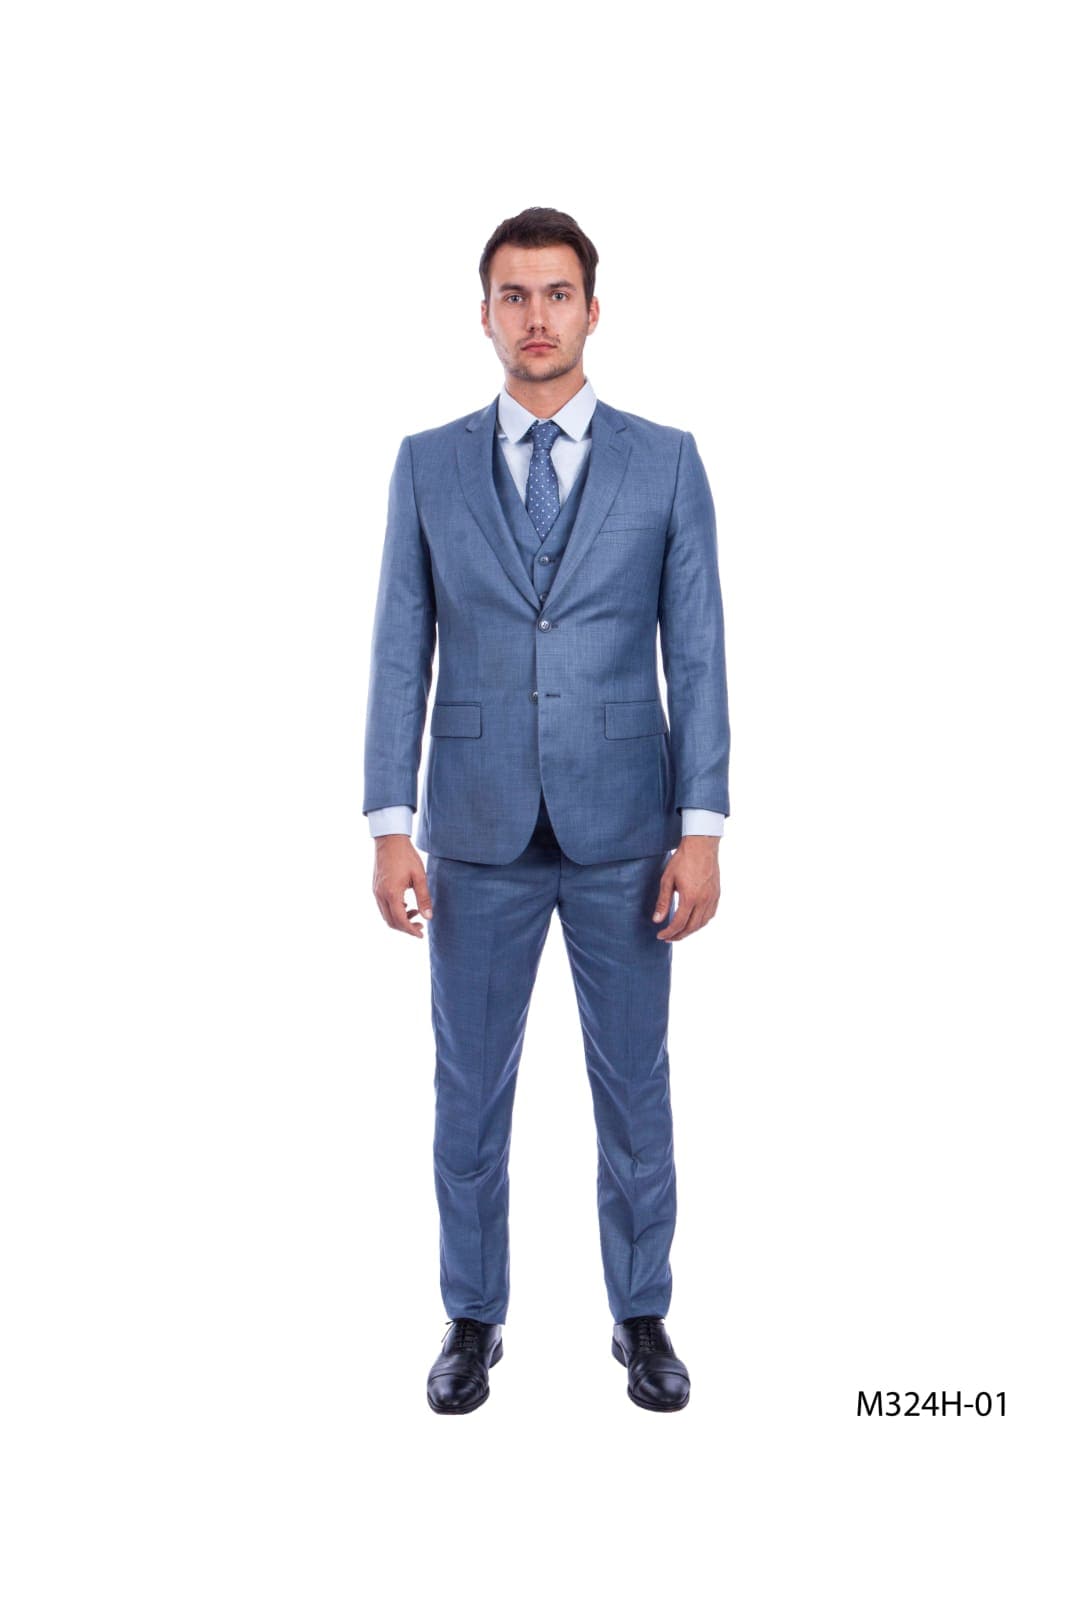 Prom Suits For Men - OCEAN 01 / US34S/W28 / EU44S/W38 - Mens Suits